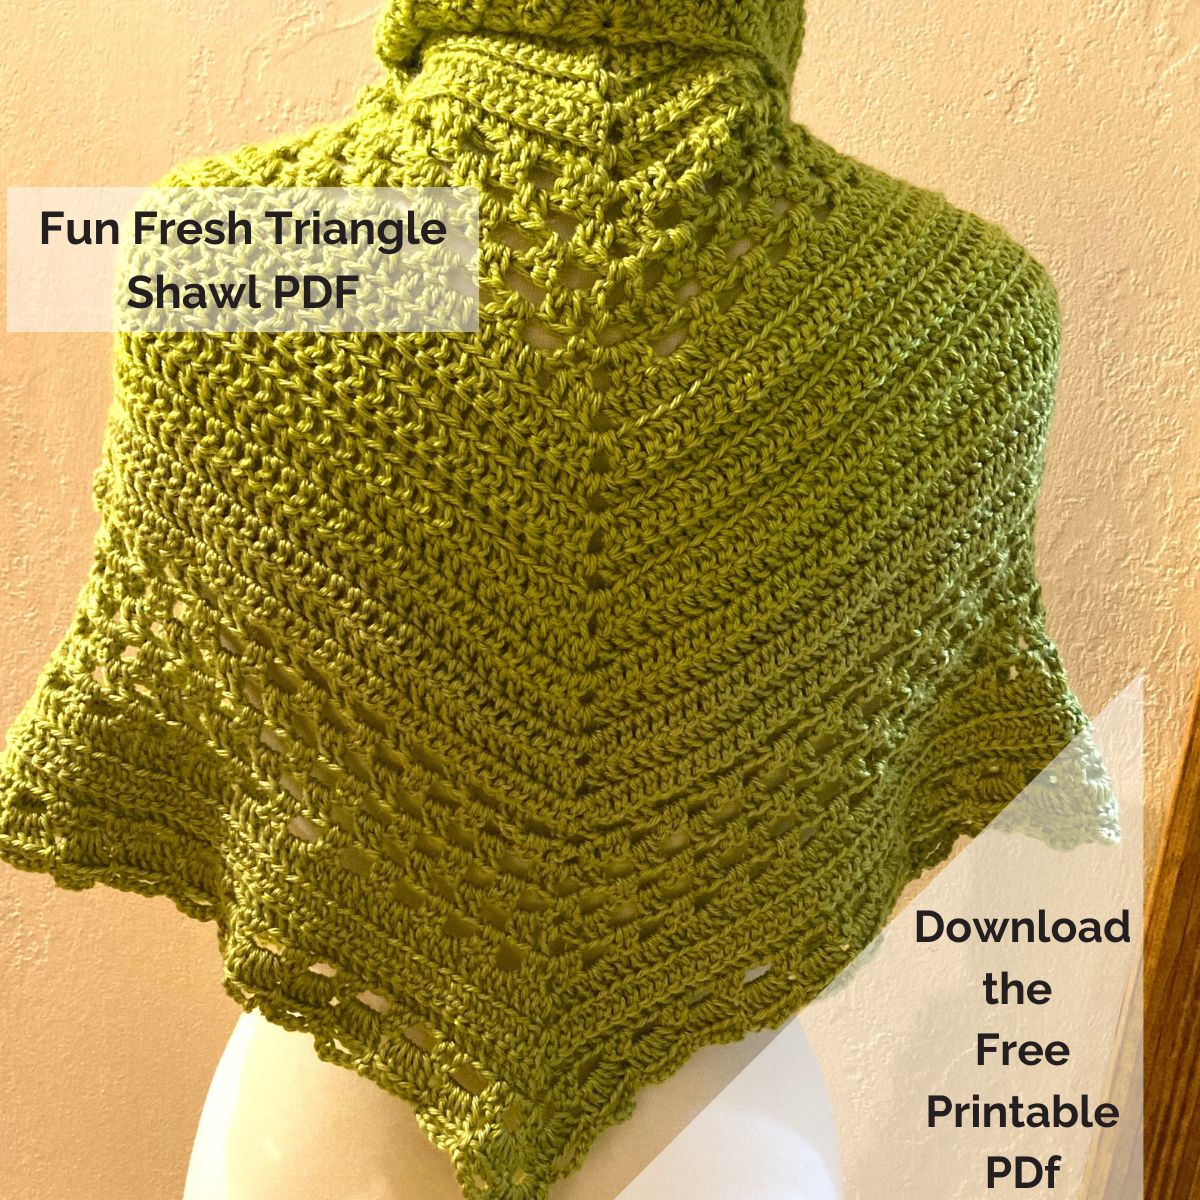 Fun Fresh Triangle shawl PDF